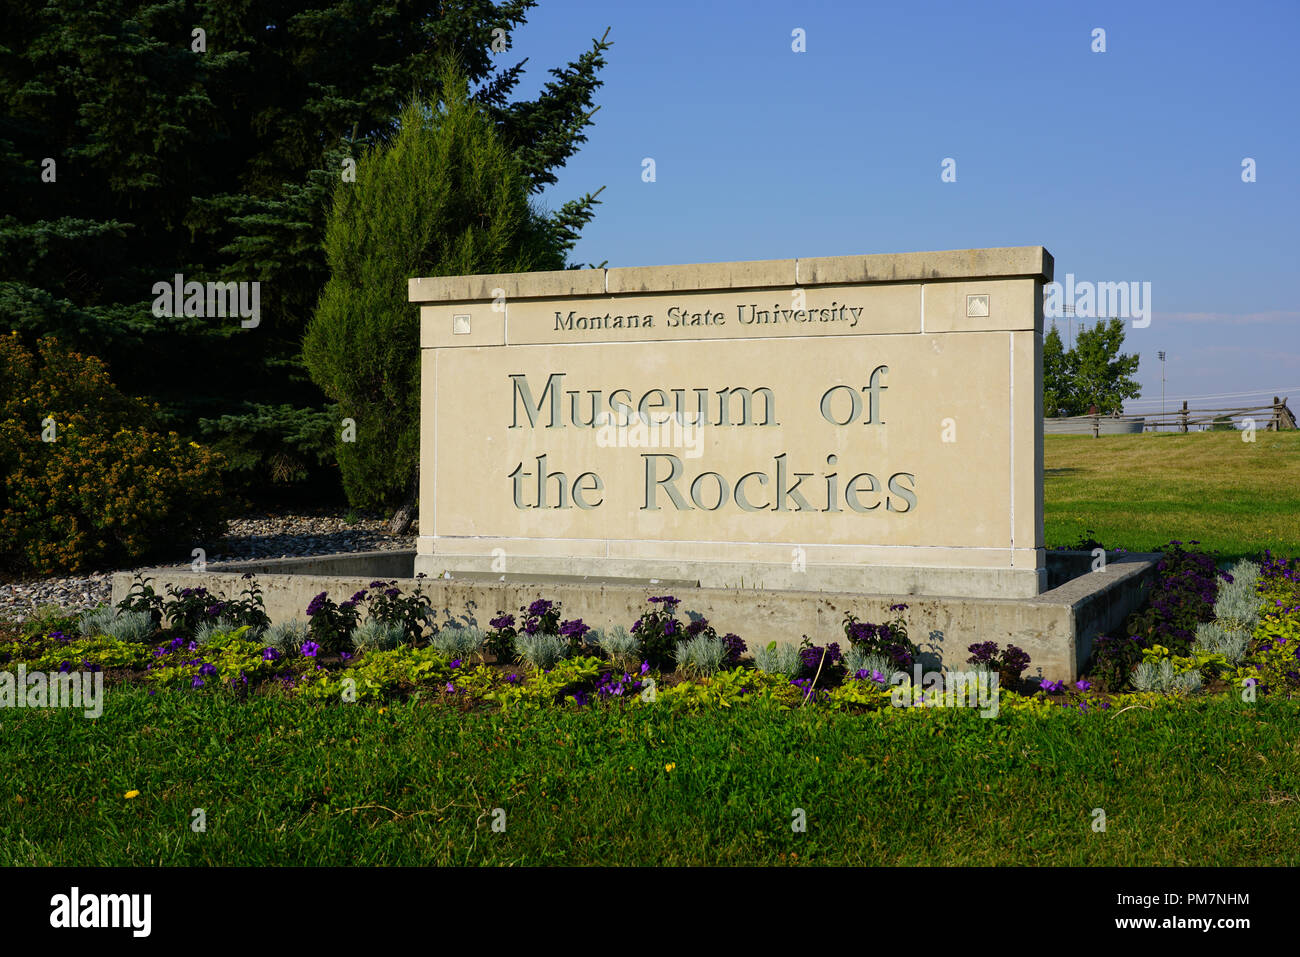 Das Museum der Rockies, für Seine paläontologischen Sammlung Dinosaurier Dinosaurier bekannt, auf dem Campus der Montana State University (MSU) in Bozeman, MT. Stockfoto